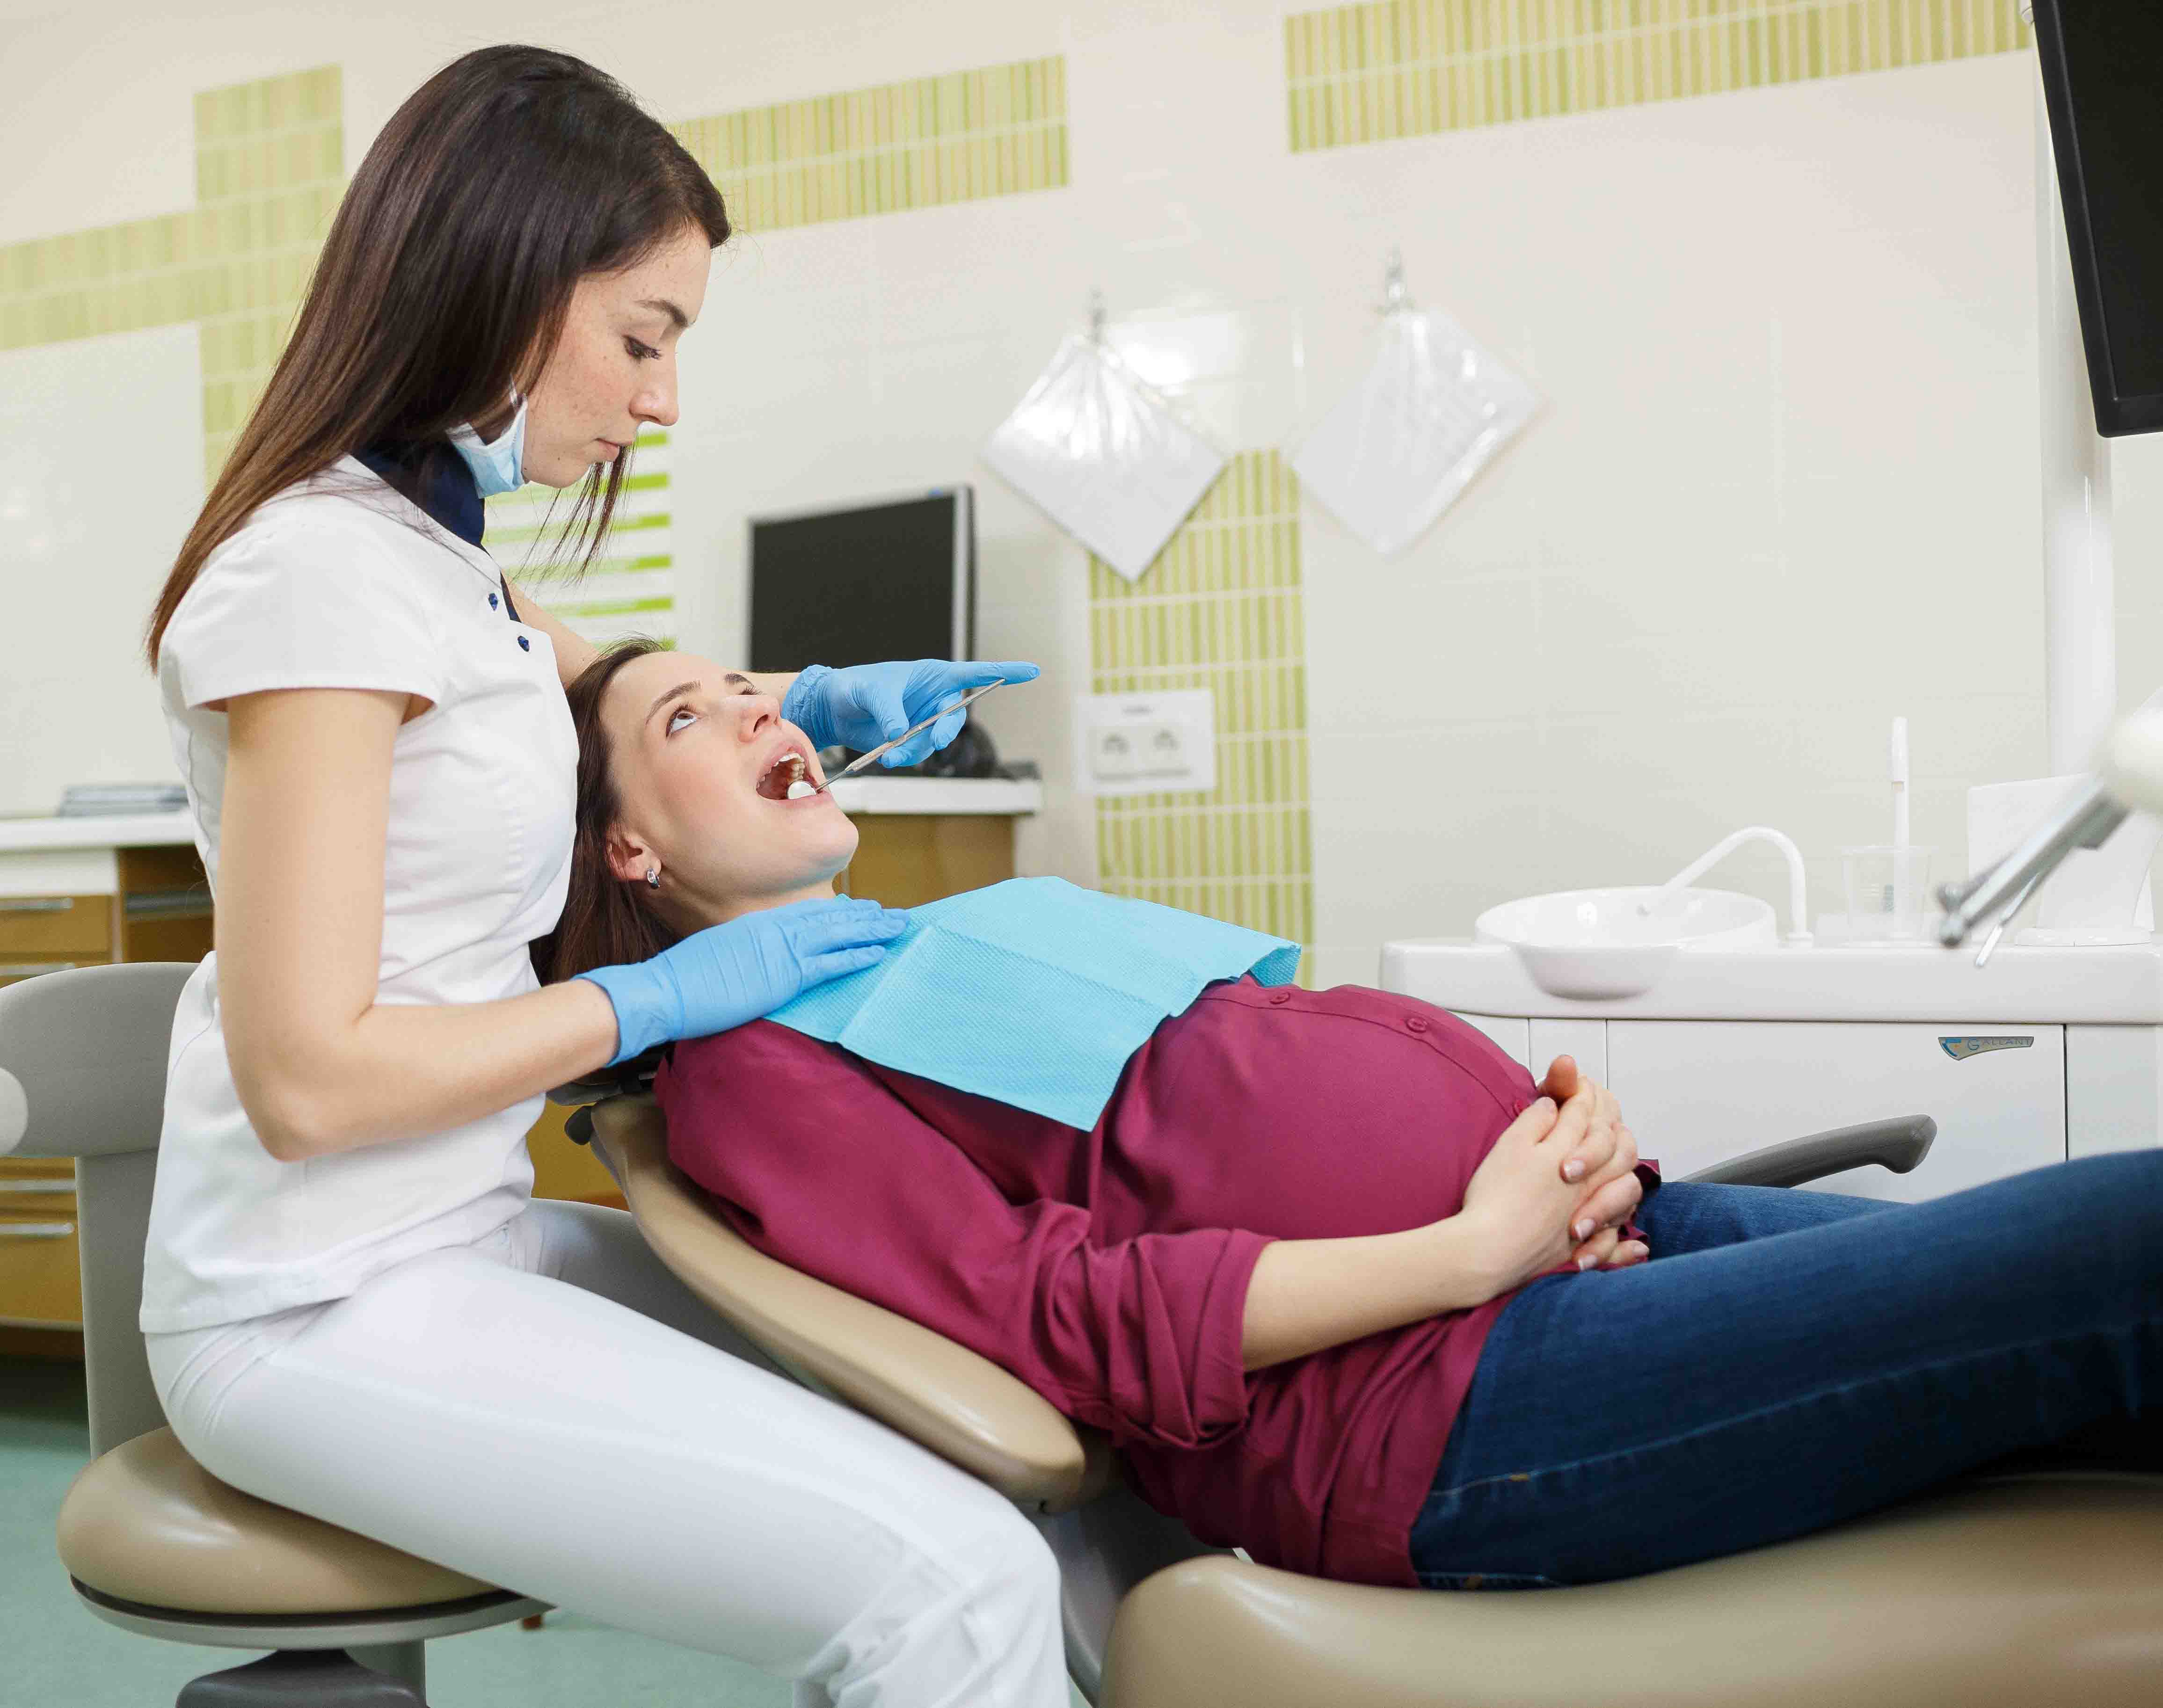 Лечение зубов при беременности с анестезией - препараты, влияние на плод, отзывы